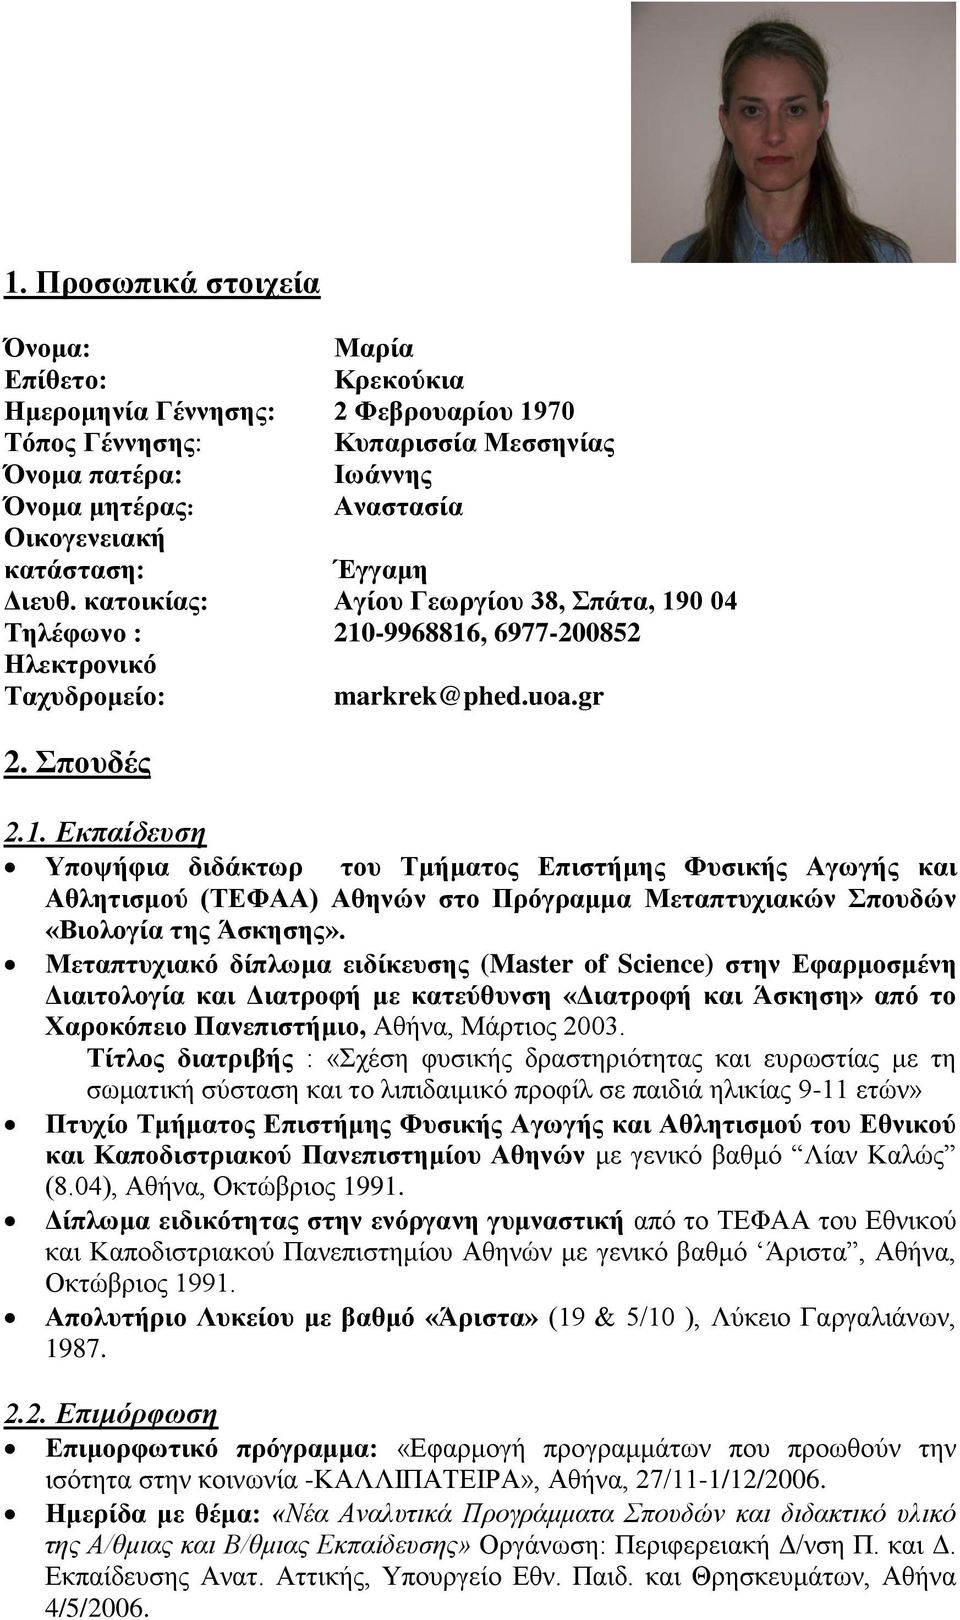 0 04 Τηλέθφνο : 210-9968816, 6977-200852 Ηλεκηρονικό Τατσδρομείο: markrek@phed.uoa.gr 2. Σποσδές 2.1. Εκπαίδεςζη Υπουήθια διδάκηφρ ηοσ Τμήμαηος Δπιζηήμης Φσζικής Αγφγής και Αθληηιζμού (ΤΔΦΑΑ) Αθηνών ζηο Πρόγραμμα Μεηαπηστιακών Σποσδών «Βιολογία ηης Άζκηζης».